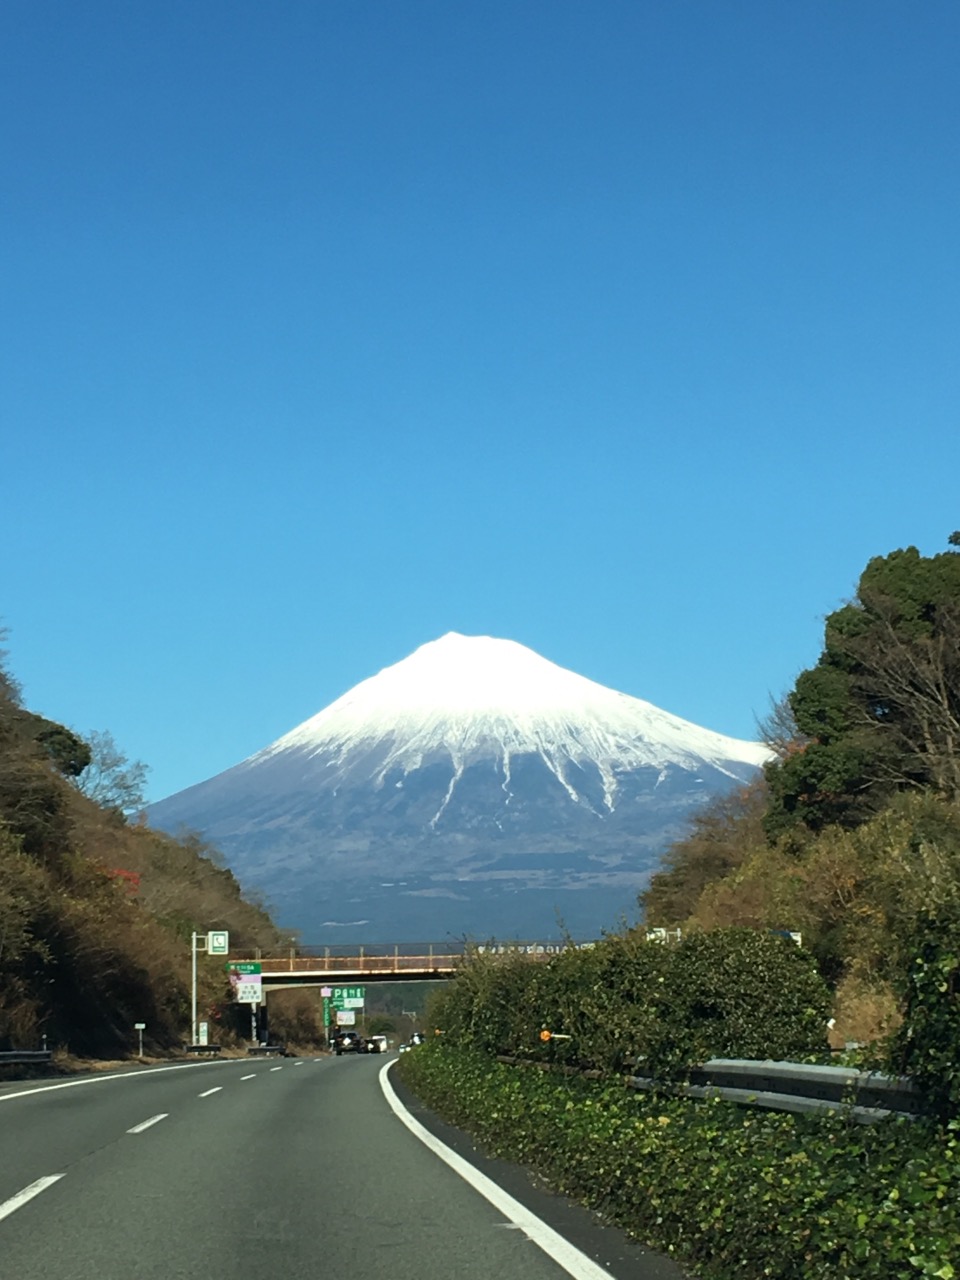 由名古屋方向駛往靜岡県超過二百公里以上，沿途的風景已經是很迷人，在尾段路途中，數十公里內還可以看到富士山美景，就算路途再遠也不夠時間去欣賞！